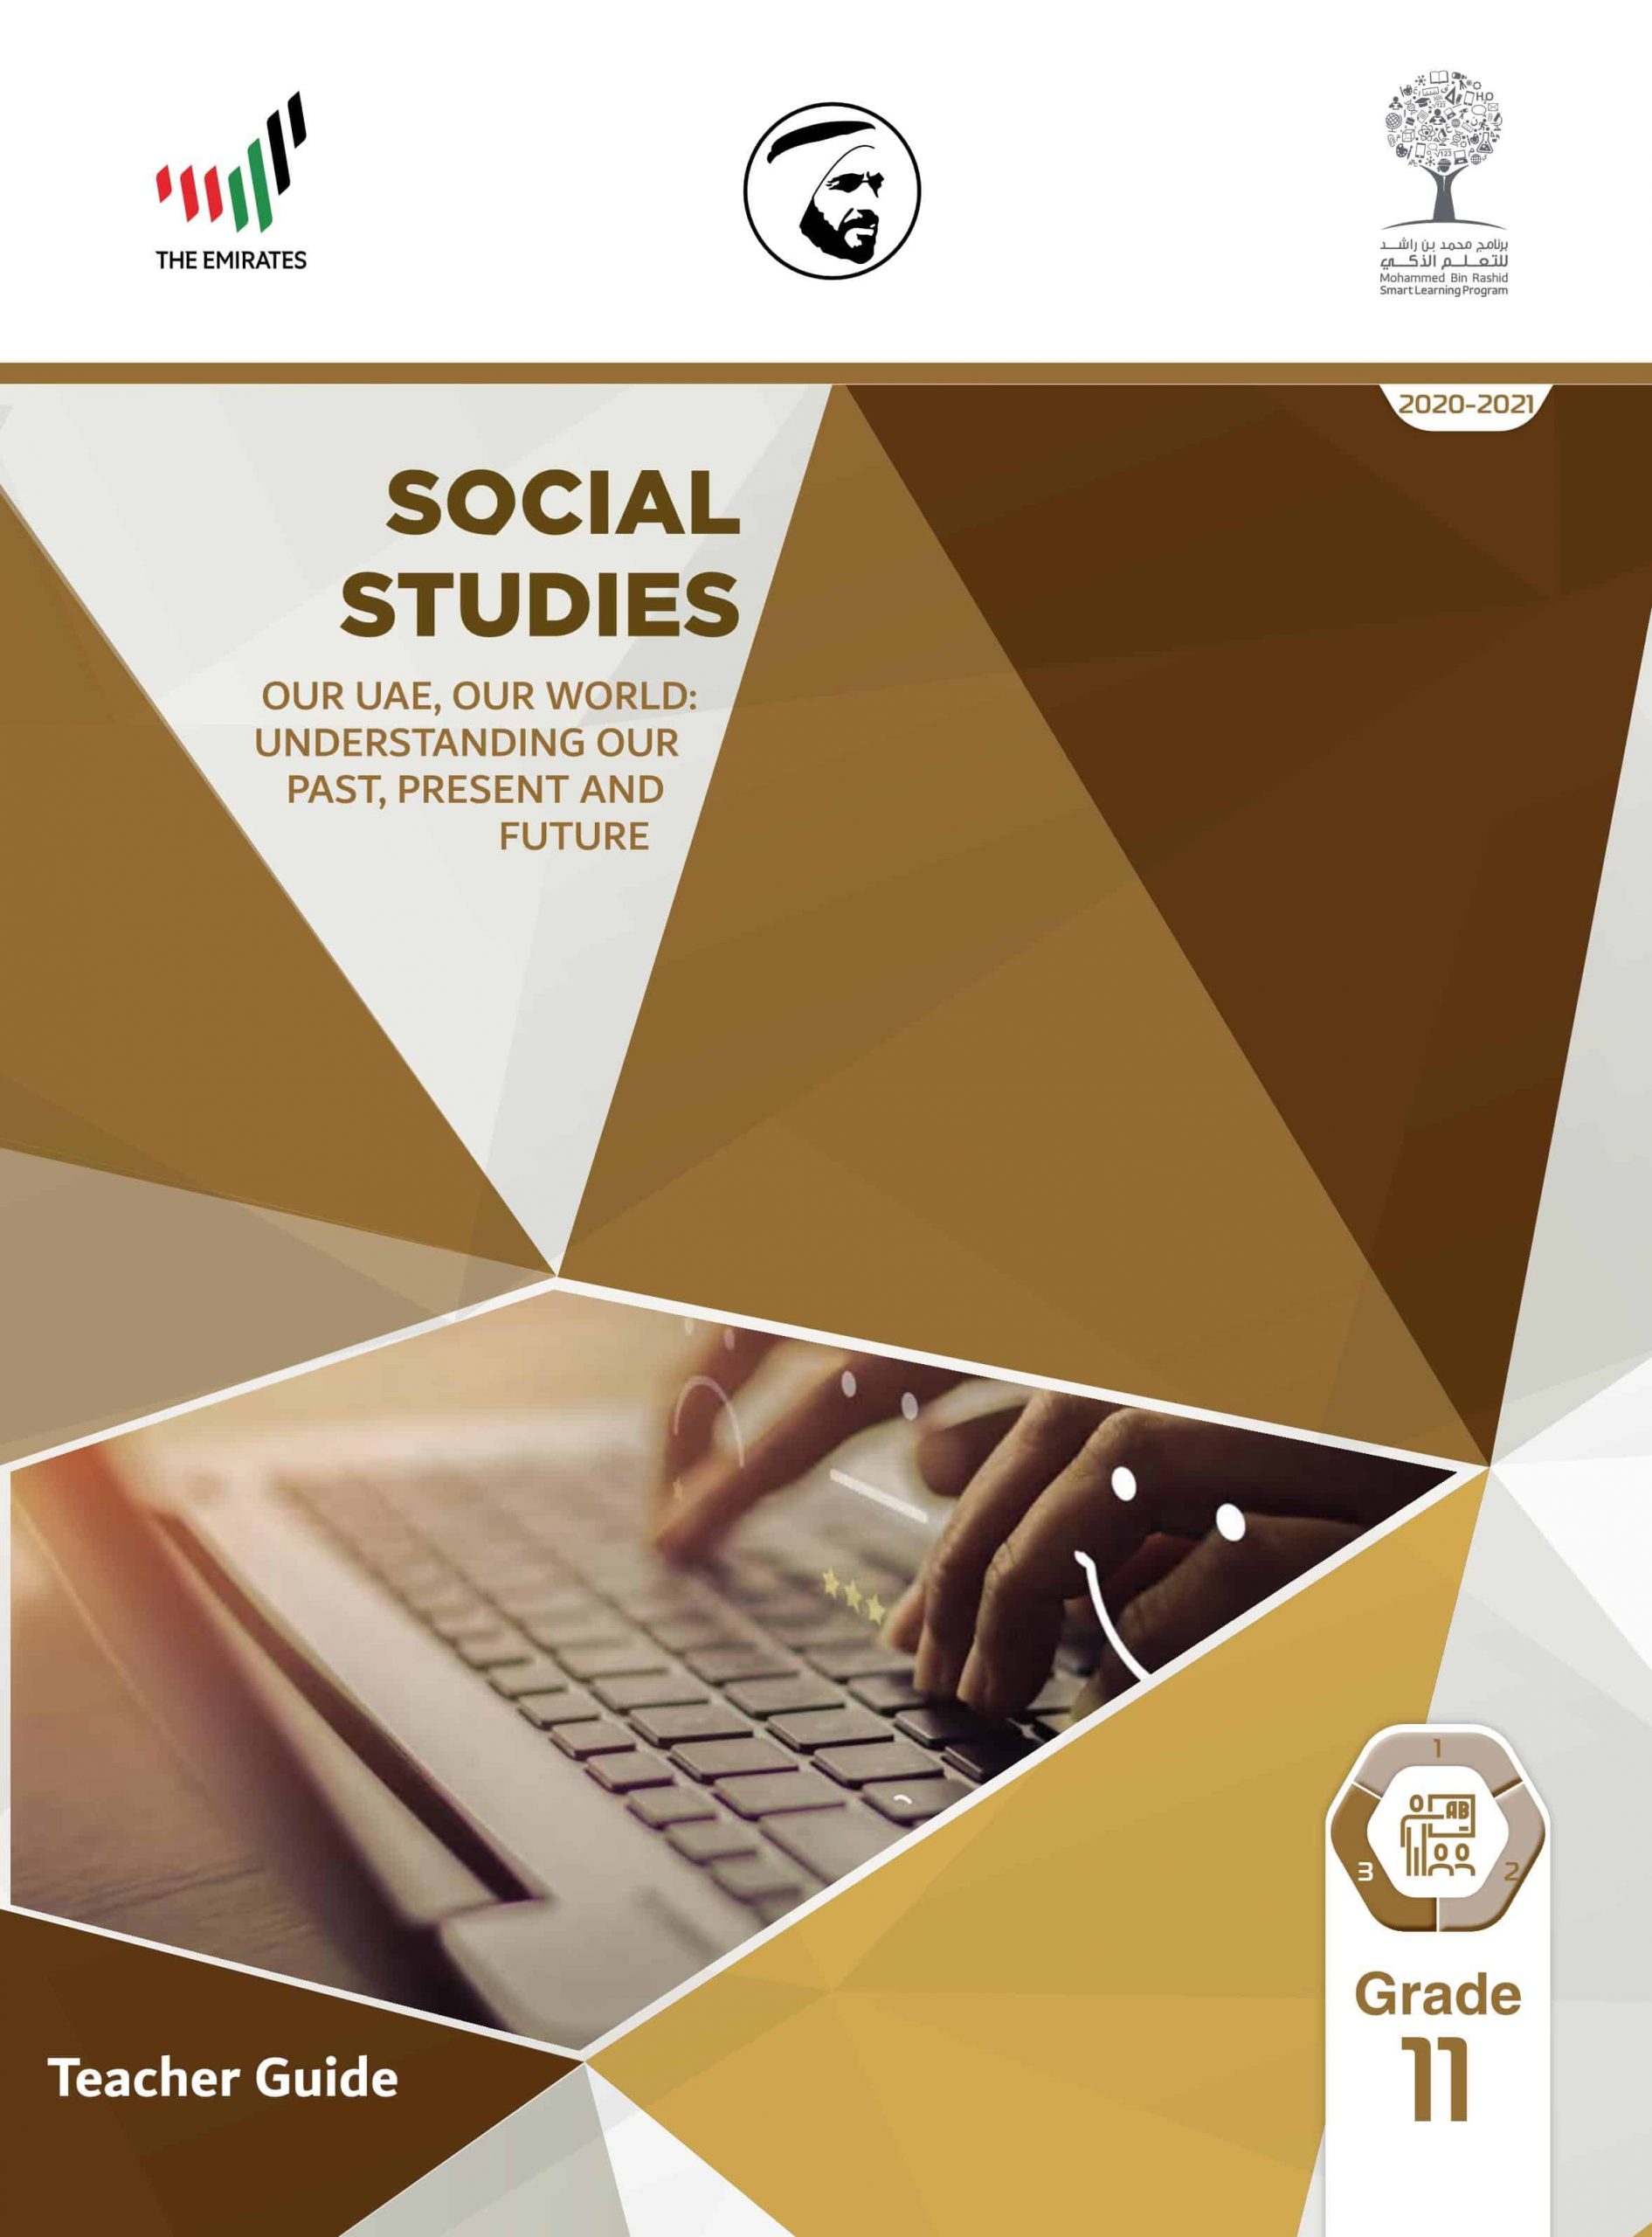 دليل المعلم بالإنجليزي الفصل الدراسي الثالث 2020-2021 الصف الحادي عشر مادة الدراسات الإجتماعية والتربية الوطنية